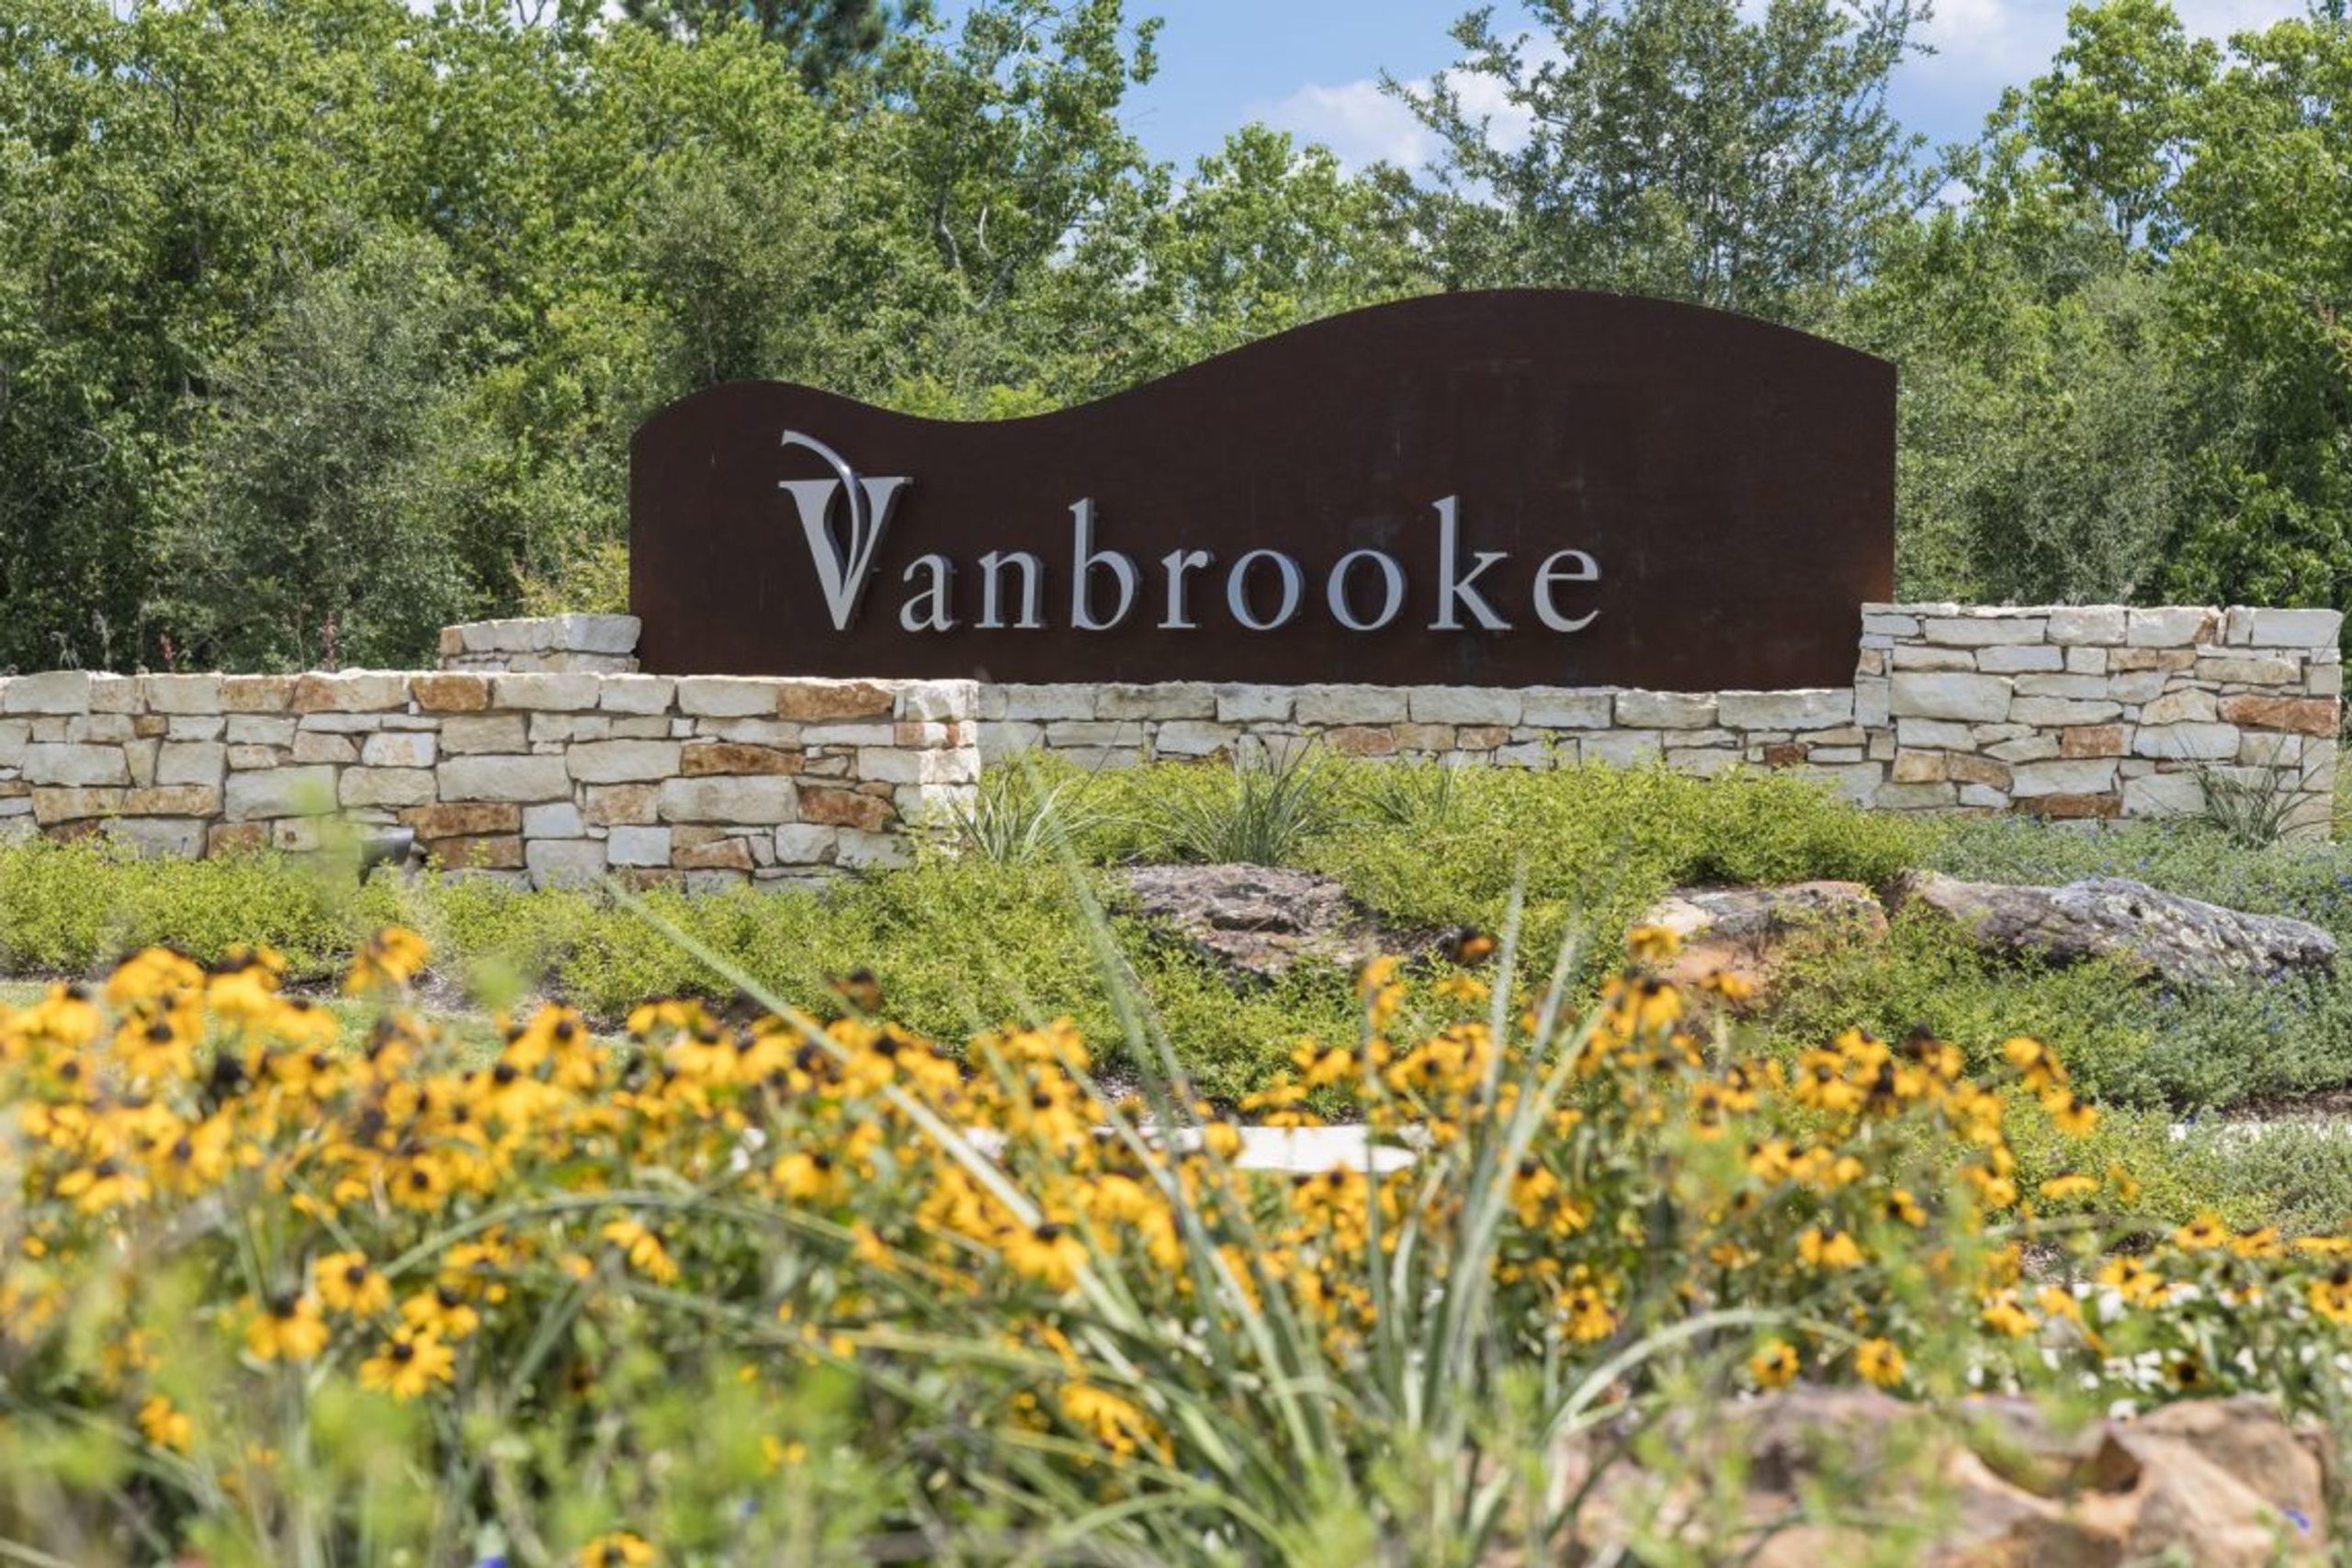 Vanbrooke